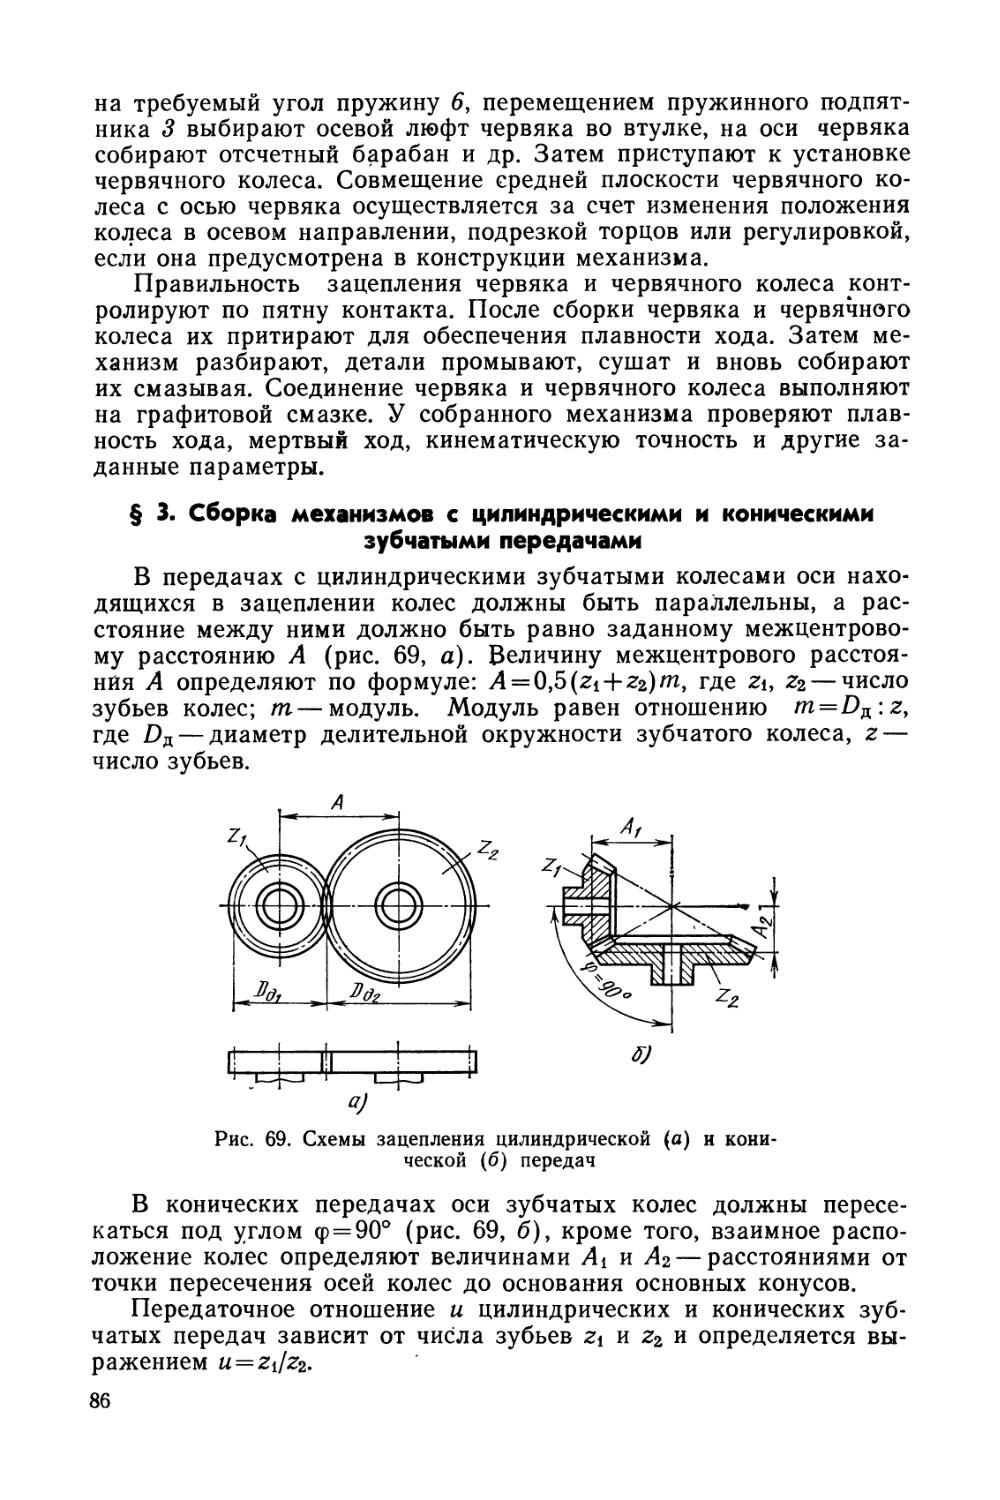 § 3. Сборка механизмов с цилиндрическими и коническими зубчатыми передачами